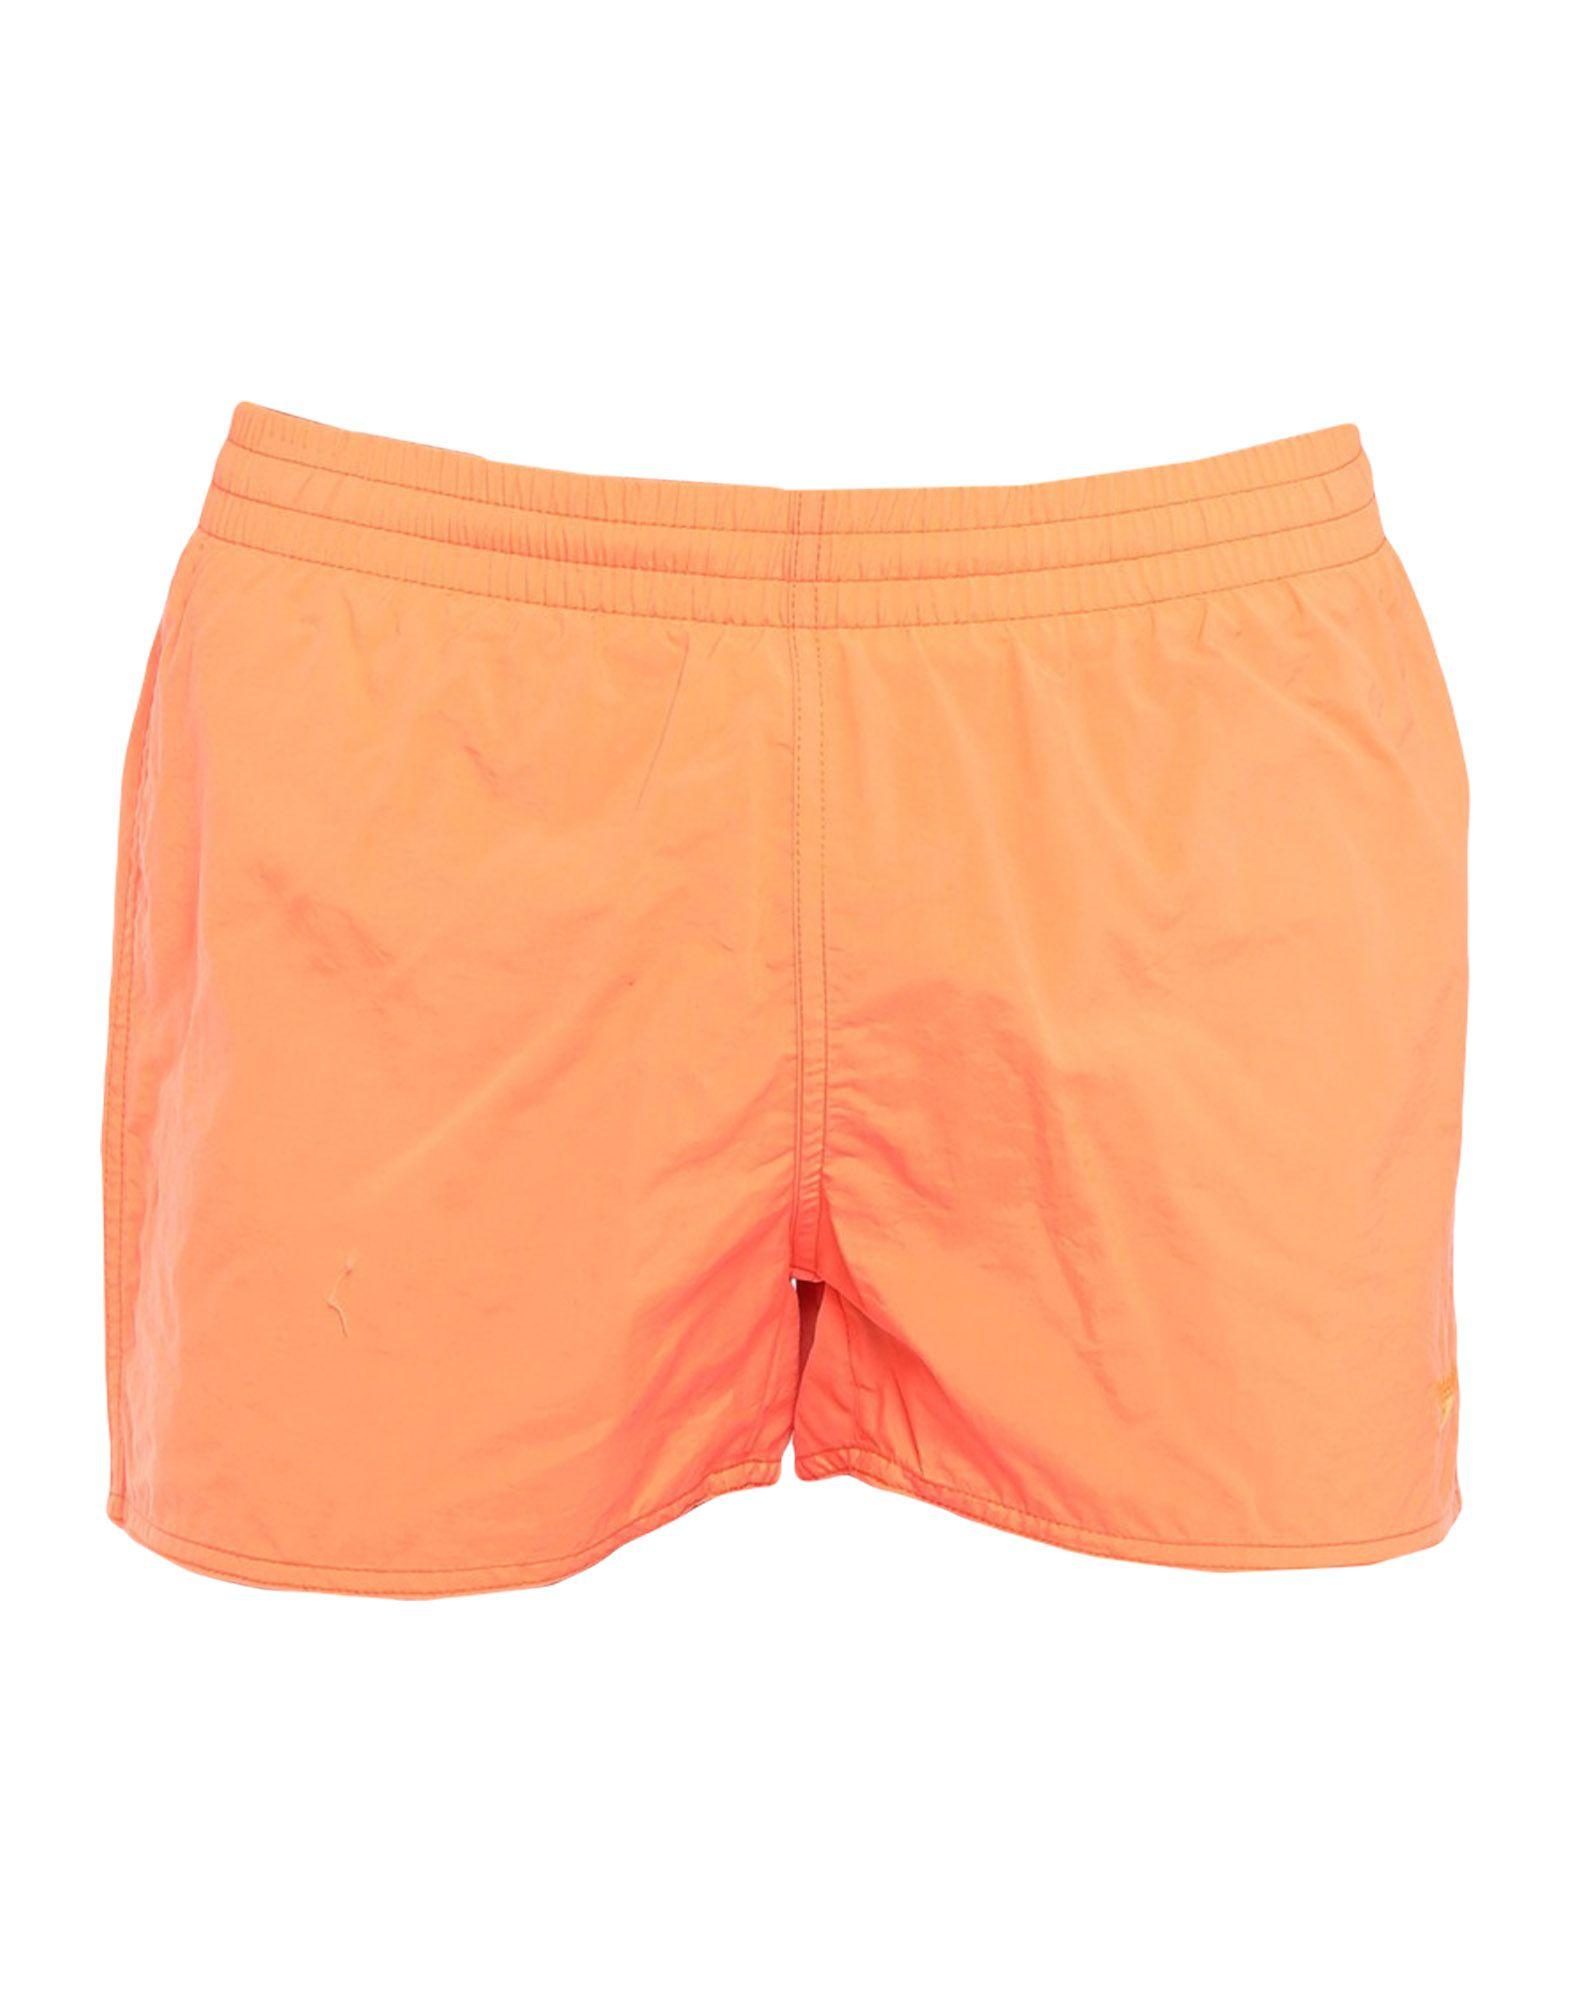 Speedo Synthetic Swim Trunks in Orange for Men - Lyst